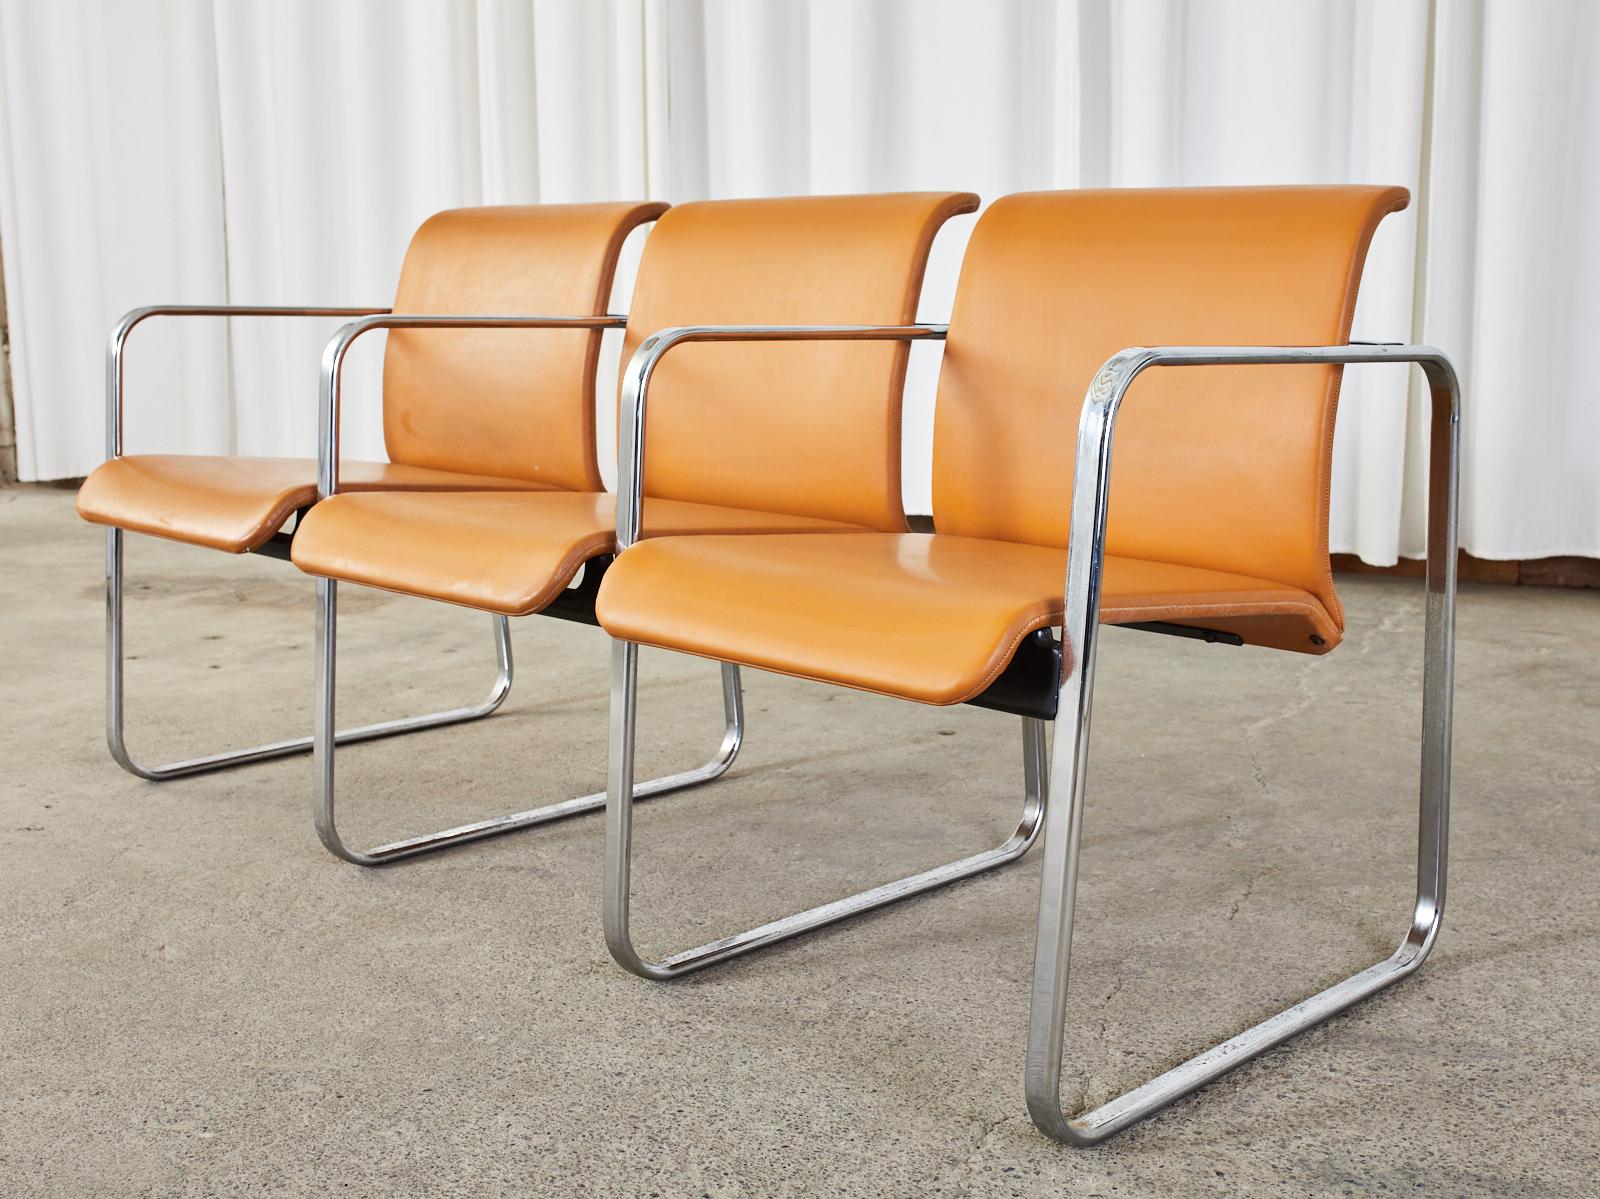 Seltener Mid-Century-Modern-Sessel mit drei Sitzplätzen und Tandembank, entworfen von Peter Protzman für Herman Miller. Der Stuhl ist aus verchromtem Flachstahlrohr gefertigt. Ein Satz von vier verchromten Bein-/Armquadraten wird durch versteckte